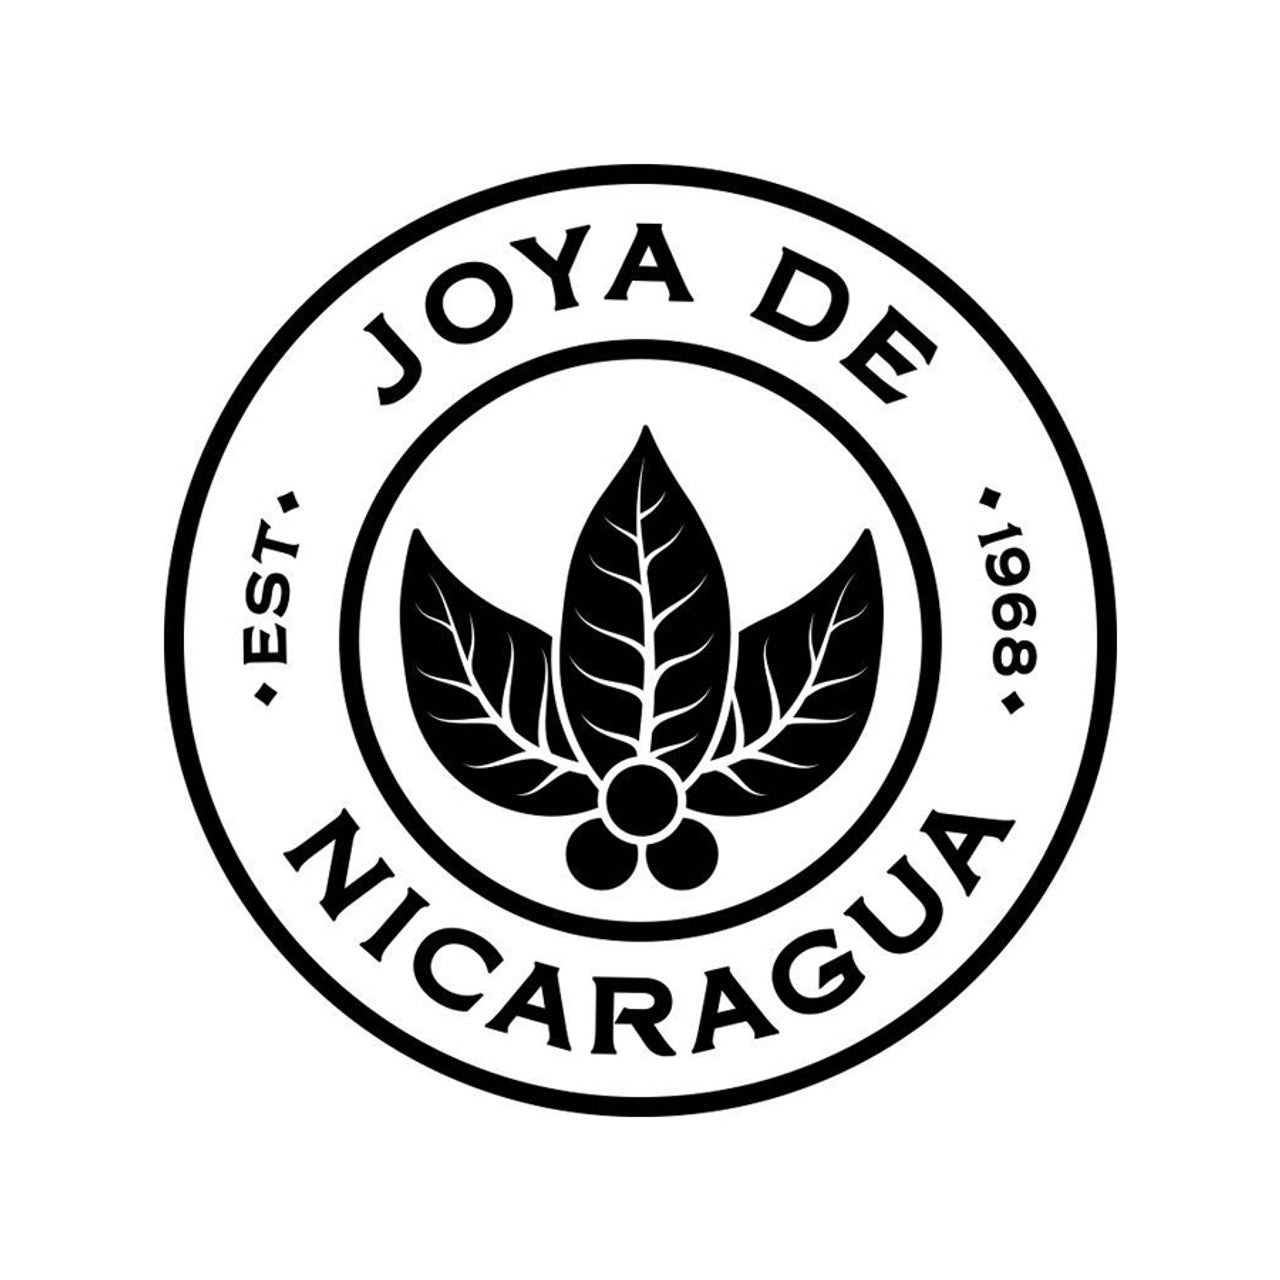 Joya De Nicaragua – Maffei Home of Havana